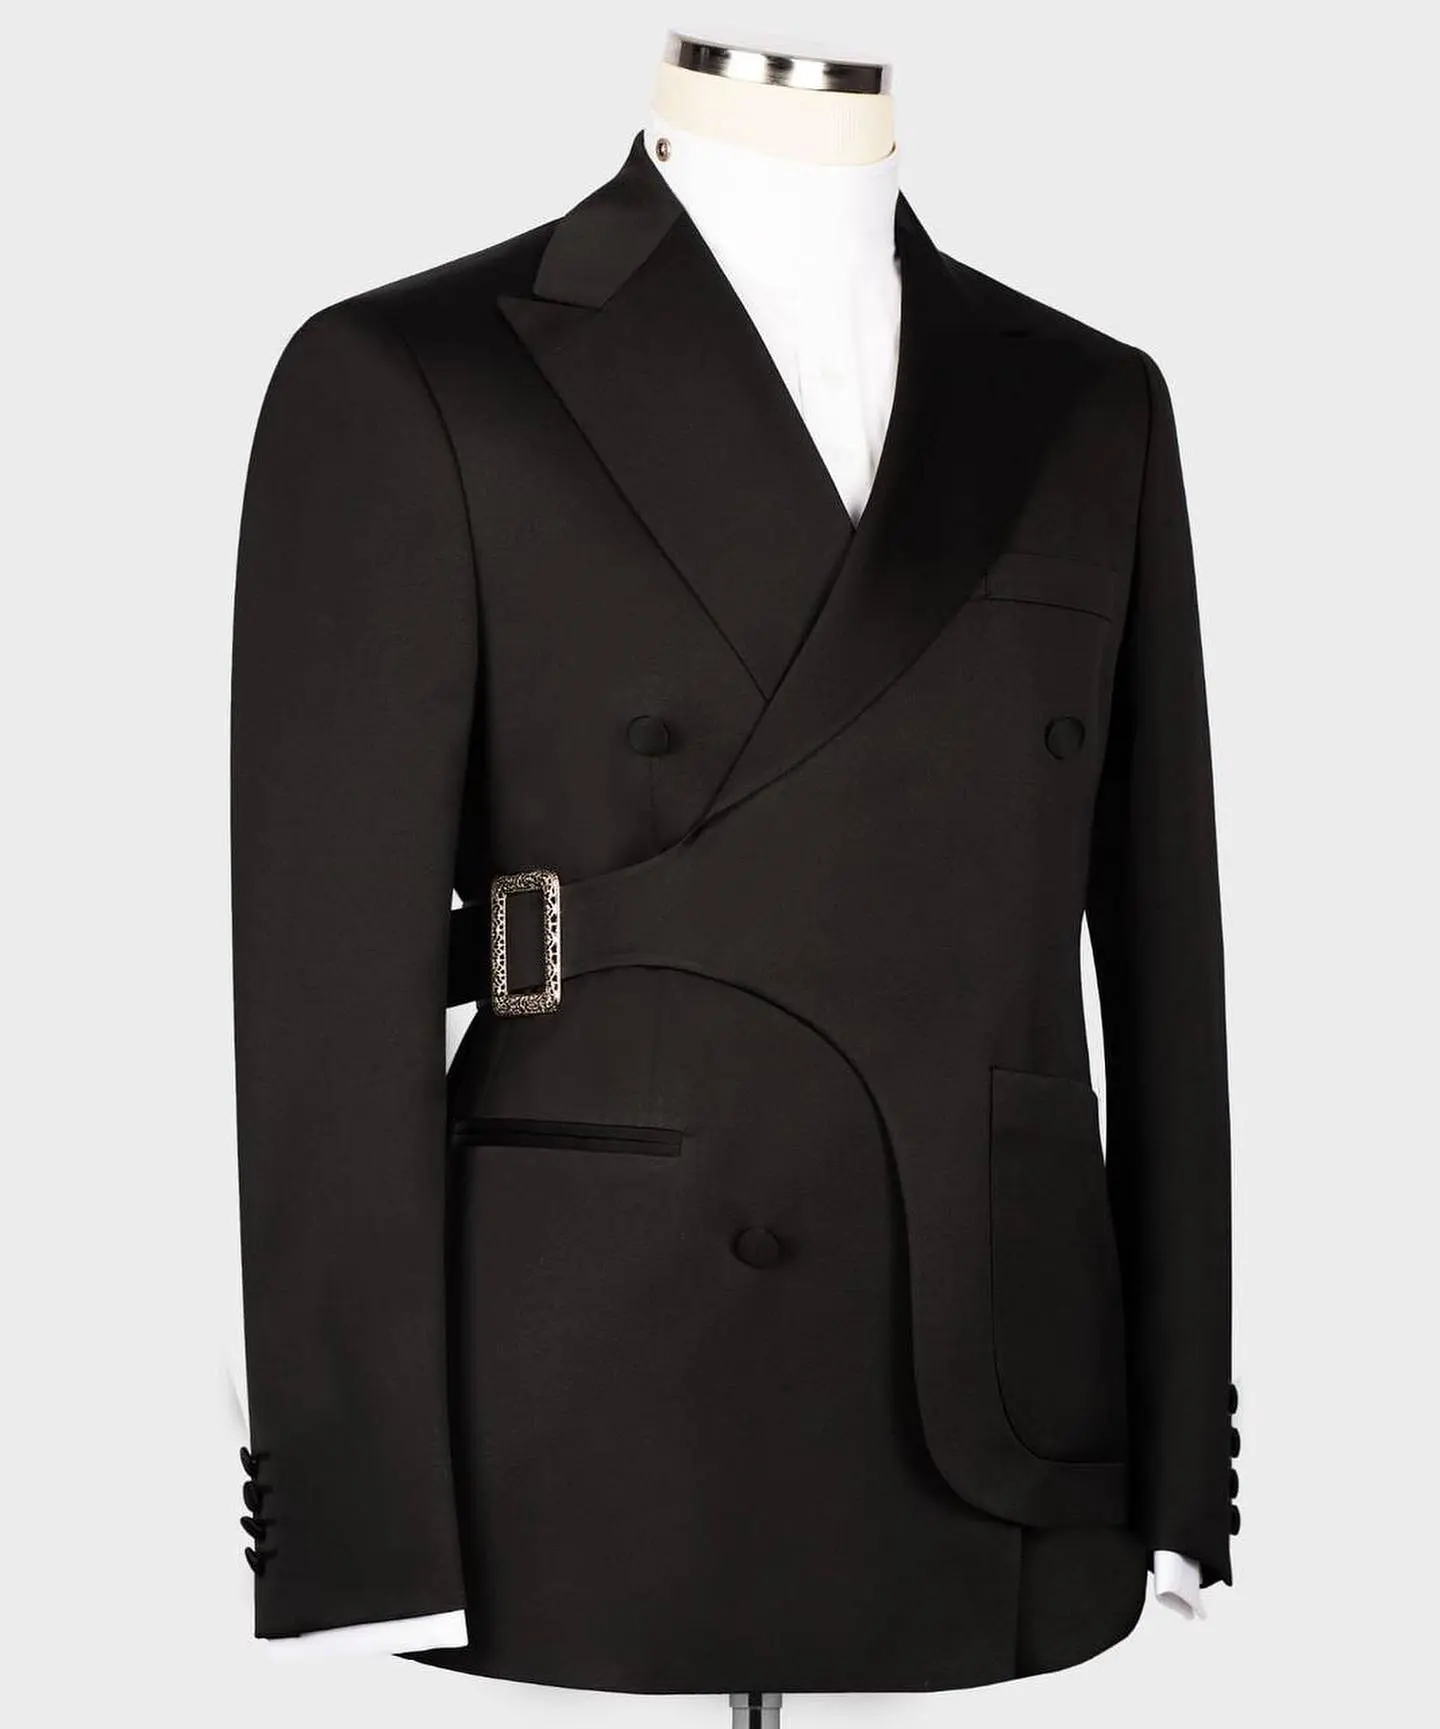 Hochwertige elegante High-End Custom Herren Slim Fit formelle Business-Anzug Zweireiher Herren anzüge